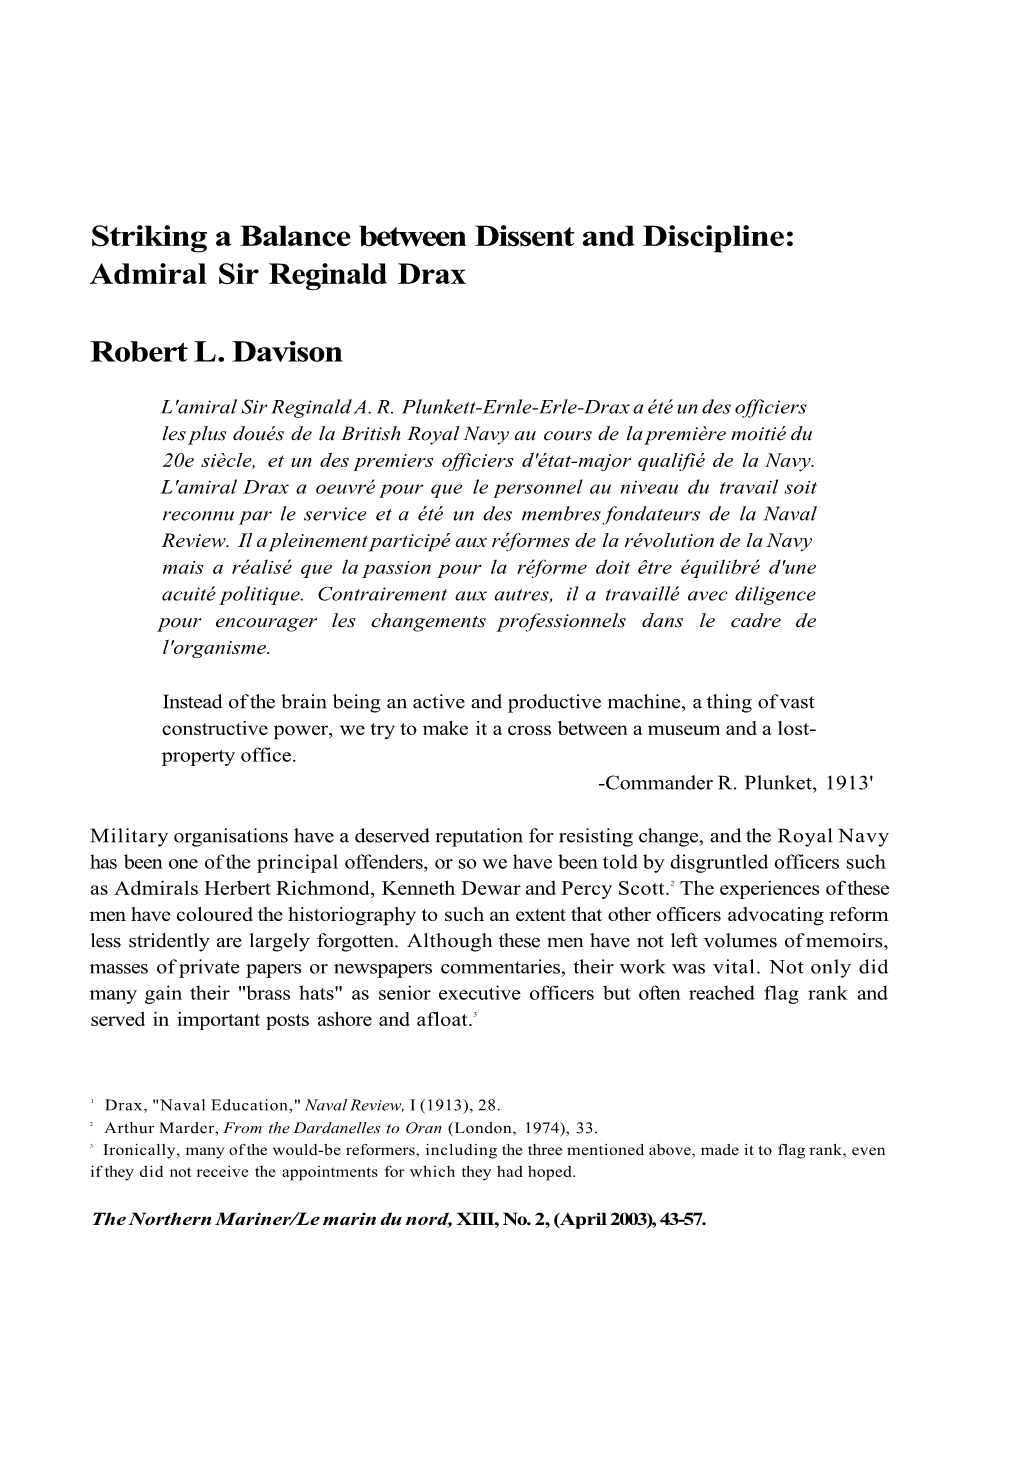 Striking a Balance Between Dissent and Discipline: Admiral Sir Reginald Drax Robert L. Davison